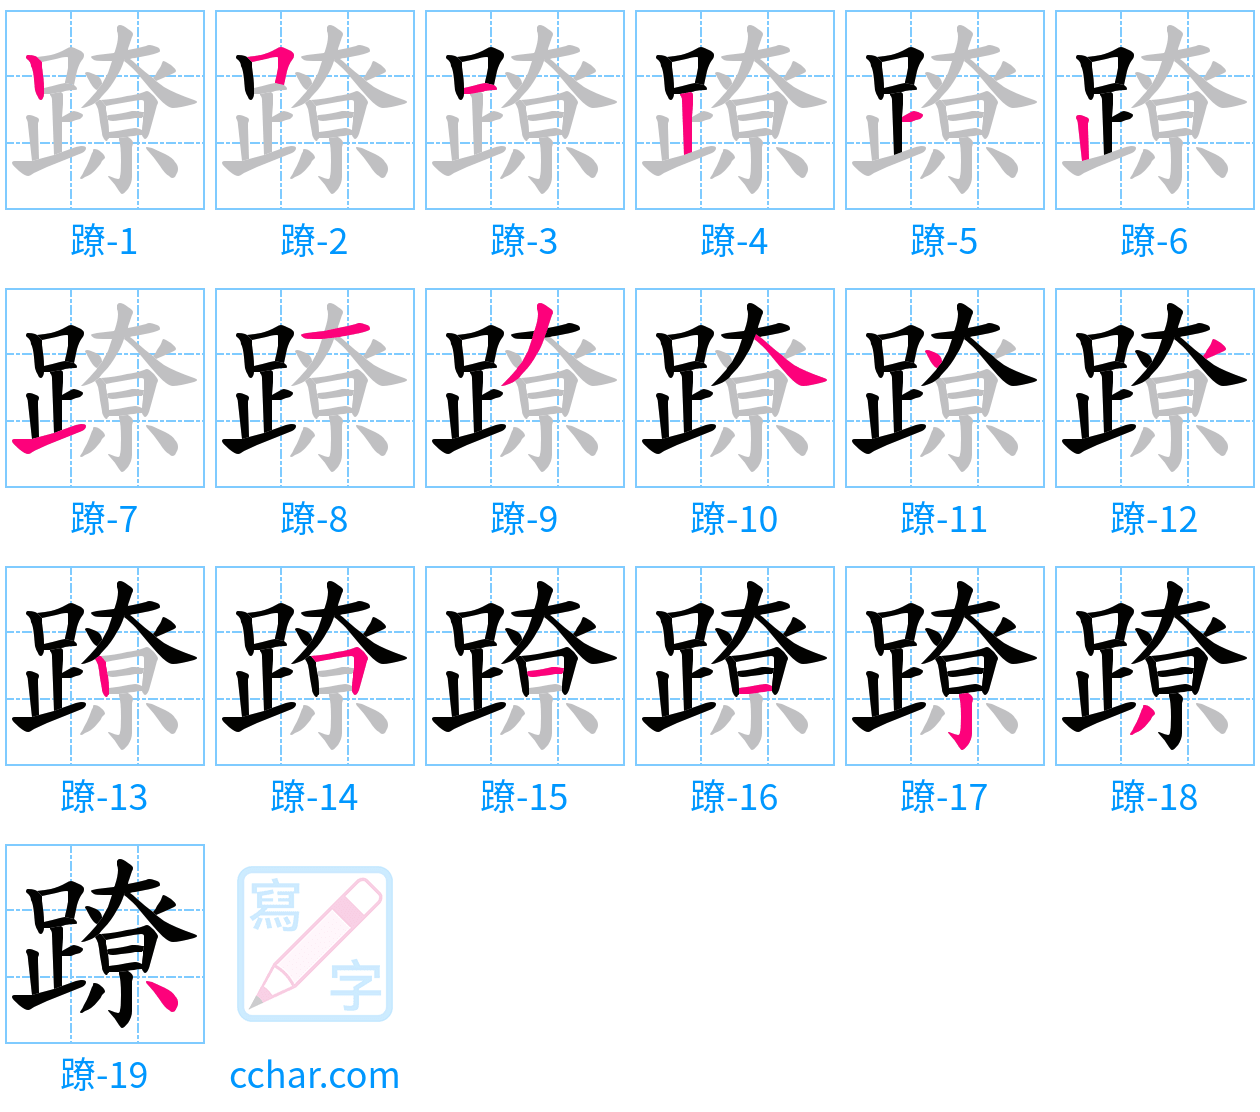 蹽 stroke order step-by-step diagram